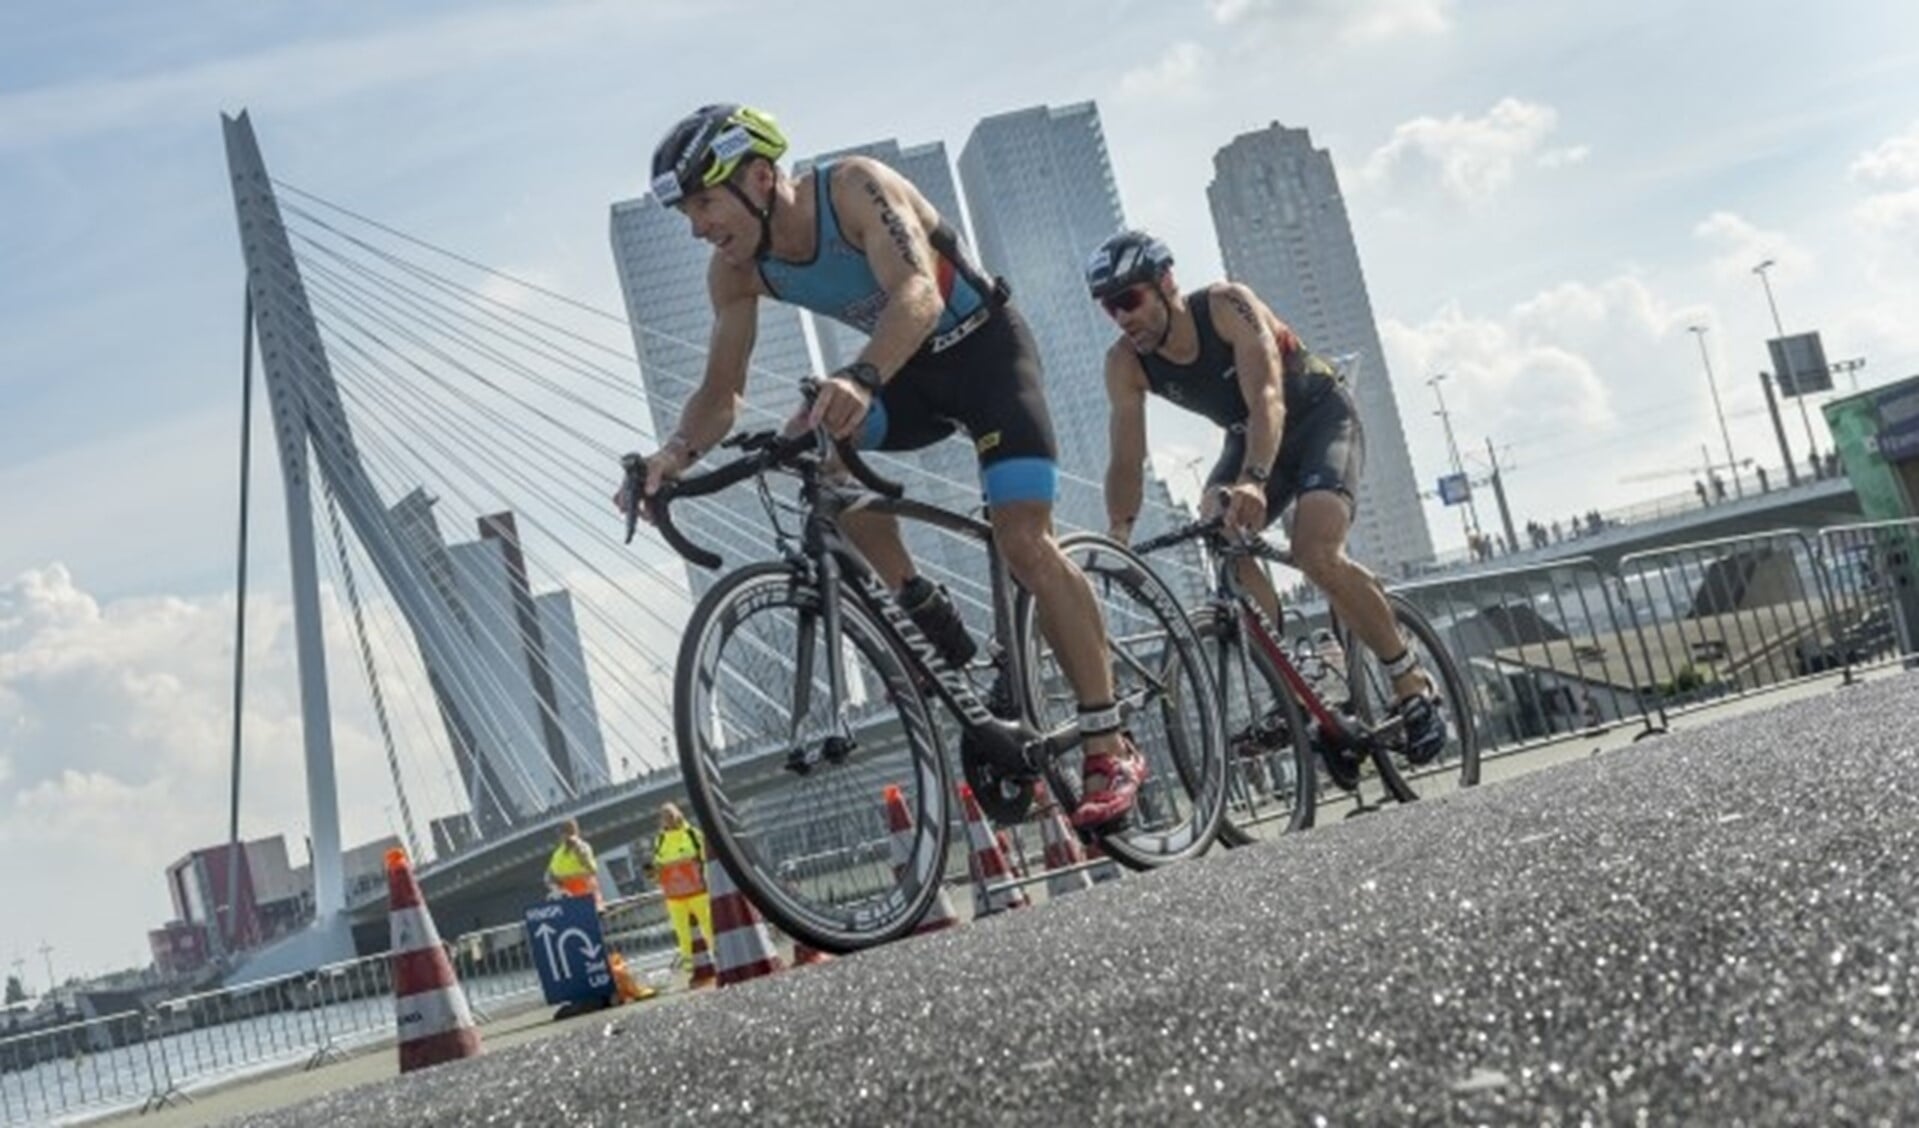 Het WK Triathlon op een parcours aan de Maas leverde mooie beelden op, ook voor de deelnemers. (Foto: Rotterdam Topsport)